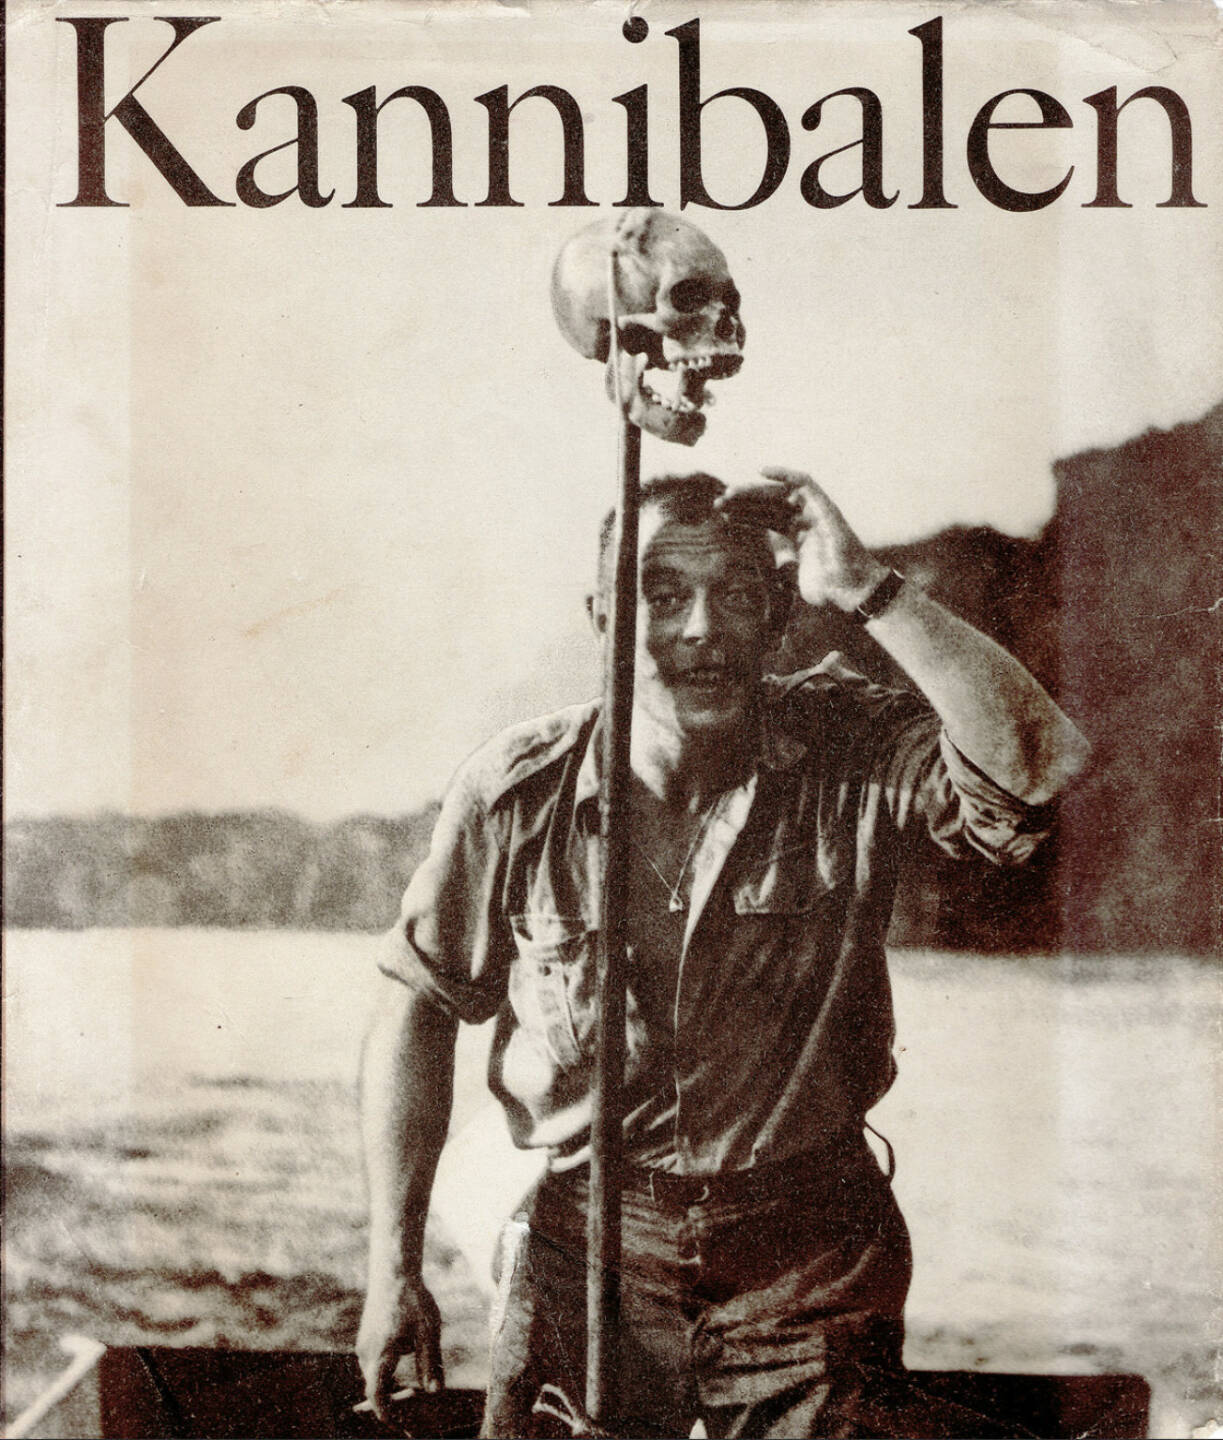 Gerhard Scheumann / Walter Heynowski / Peter Hellmich - Kannibalen (1967), 150-300 Euro, http://josefchladek.com/book/gerhard_scheumann_walter_heynowski_peter_hellmich_-_kannibalen